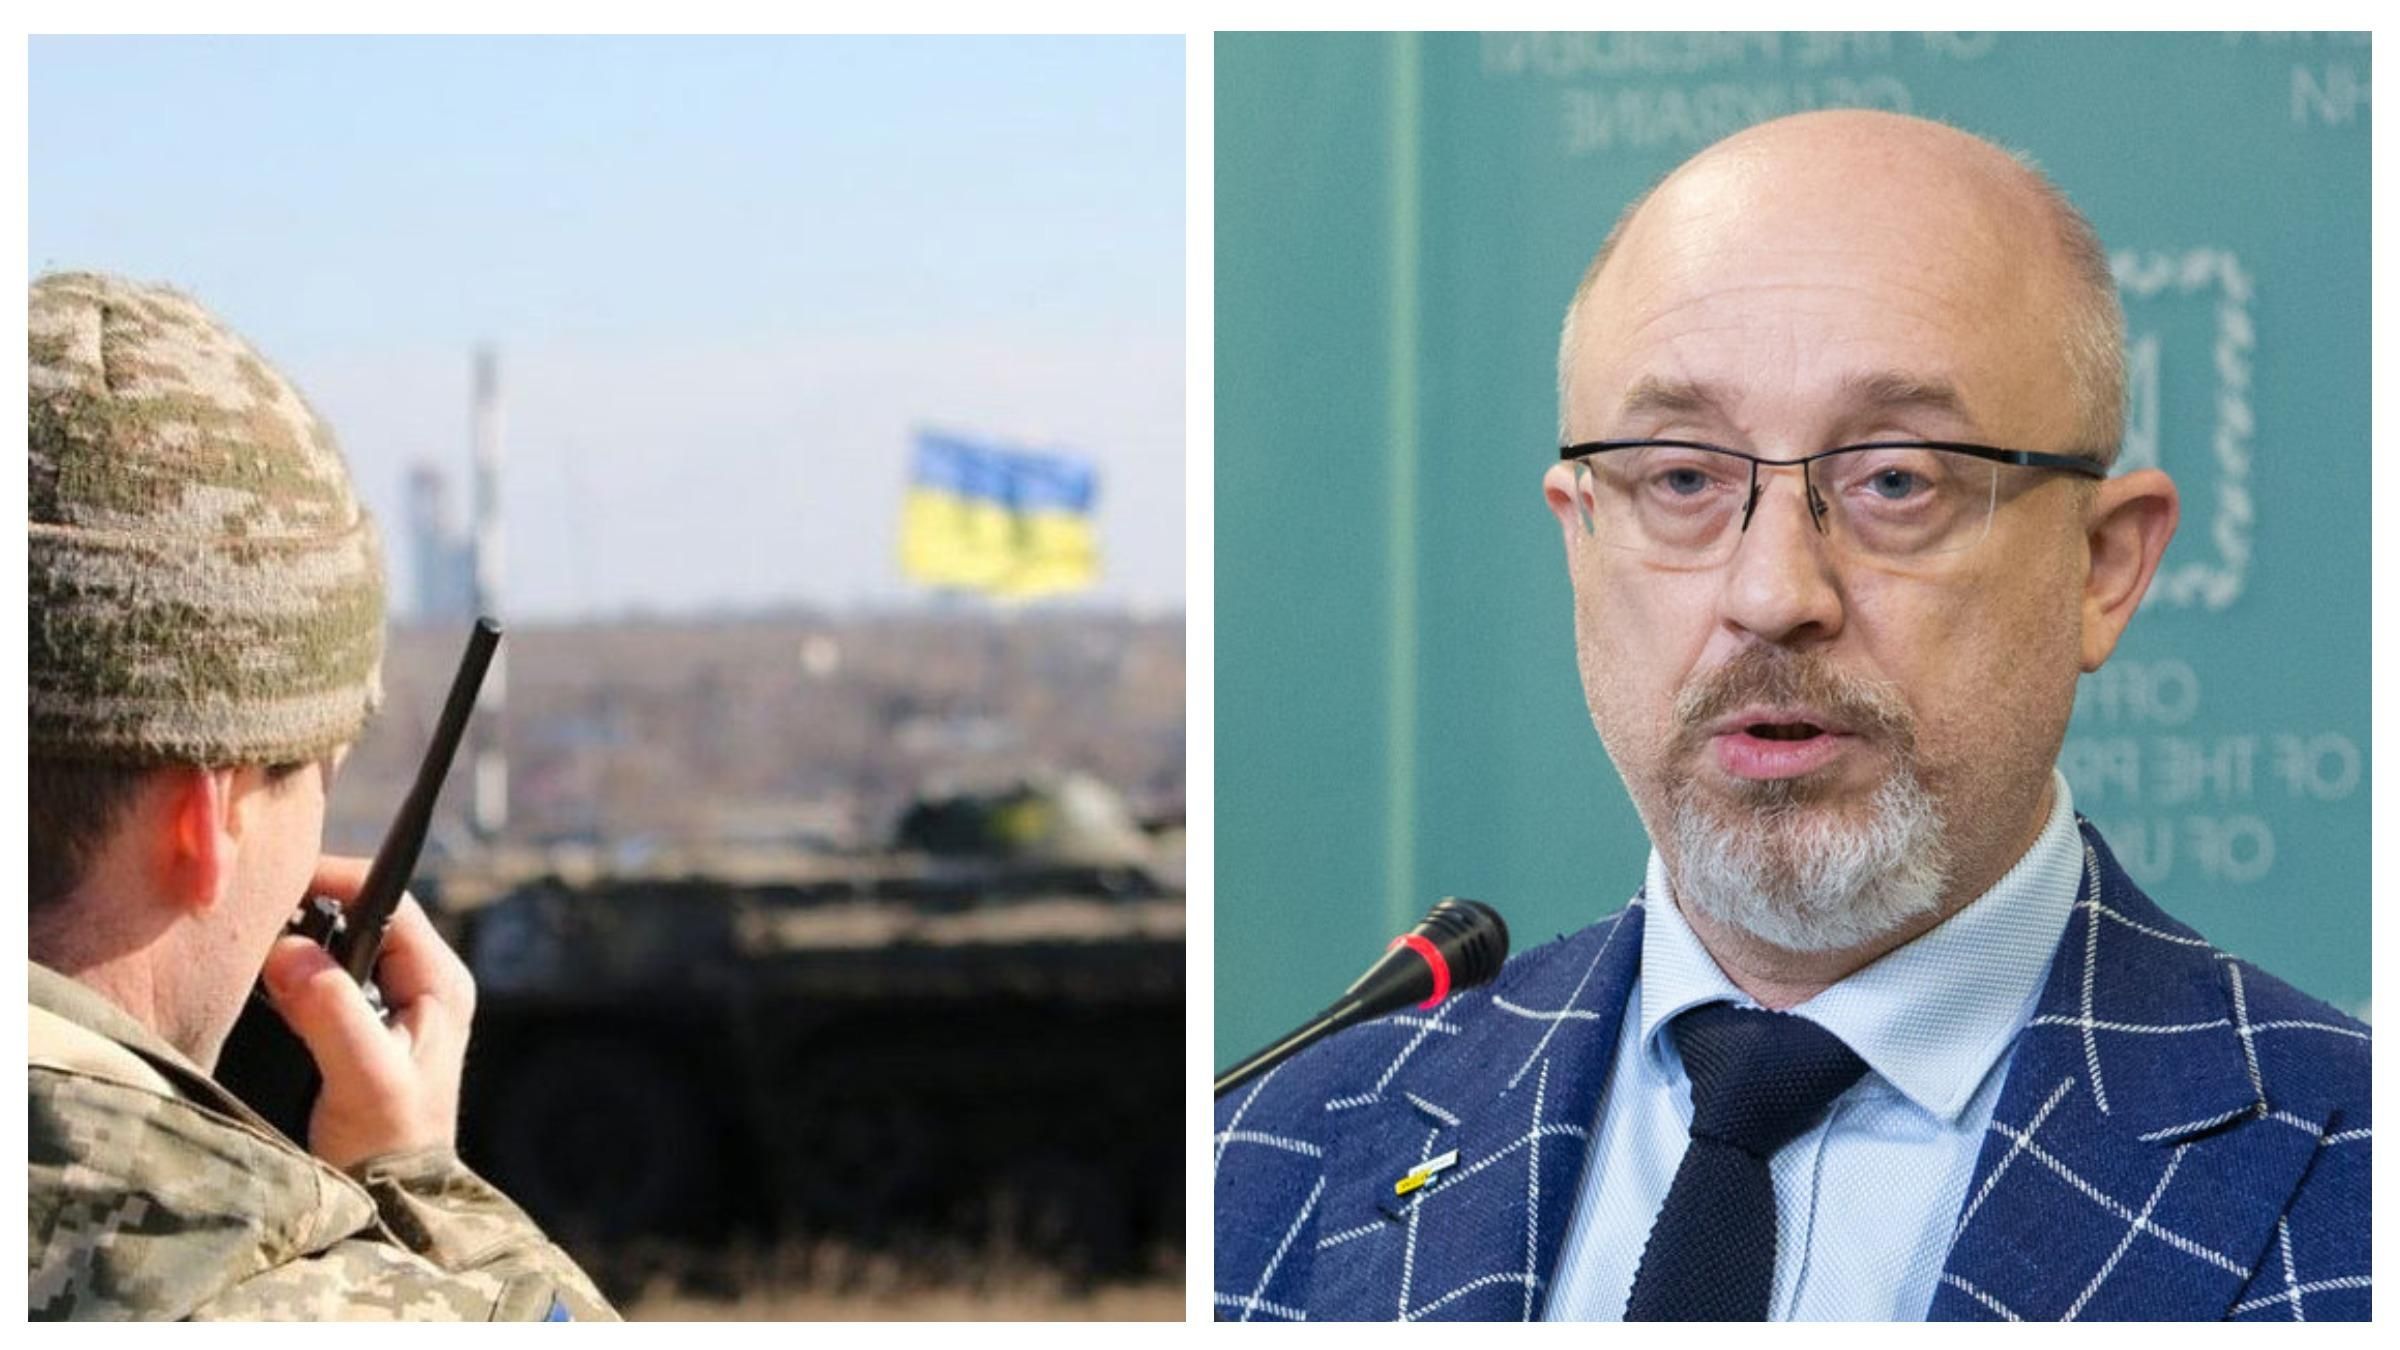 Нове розведення сил, – Резніков назвав найближчі дії влади на Донбасі